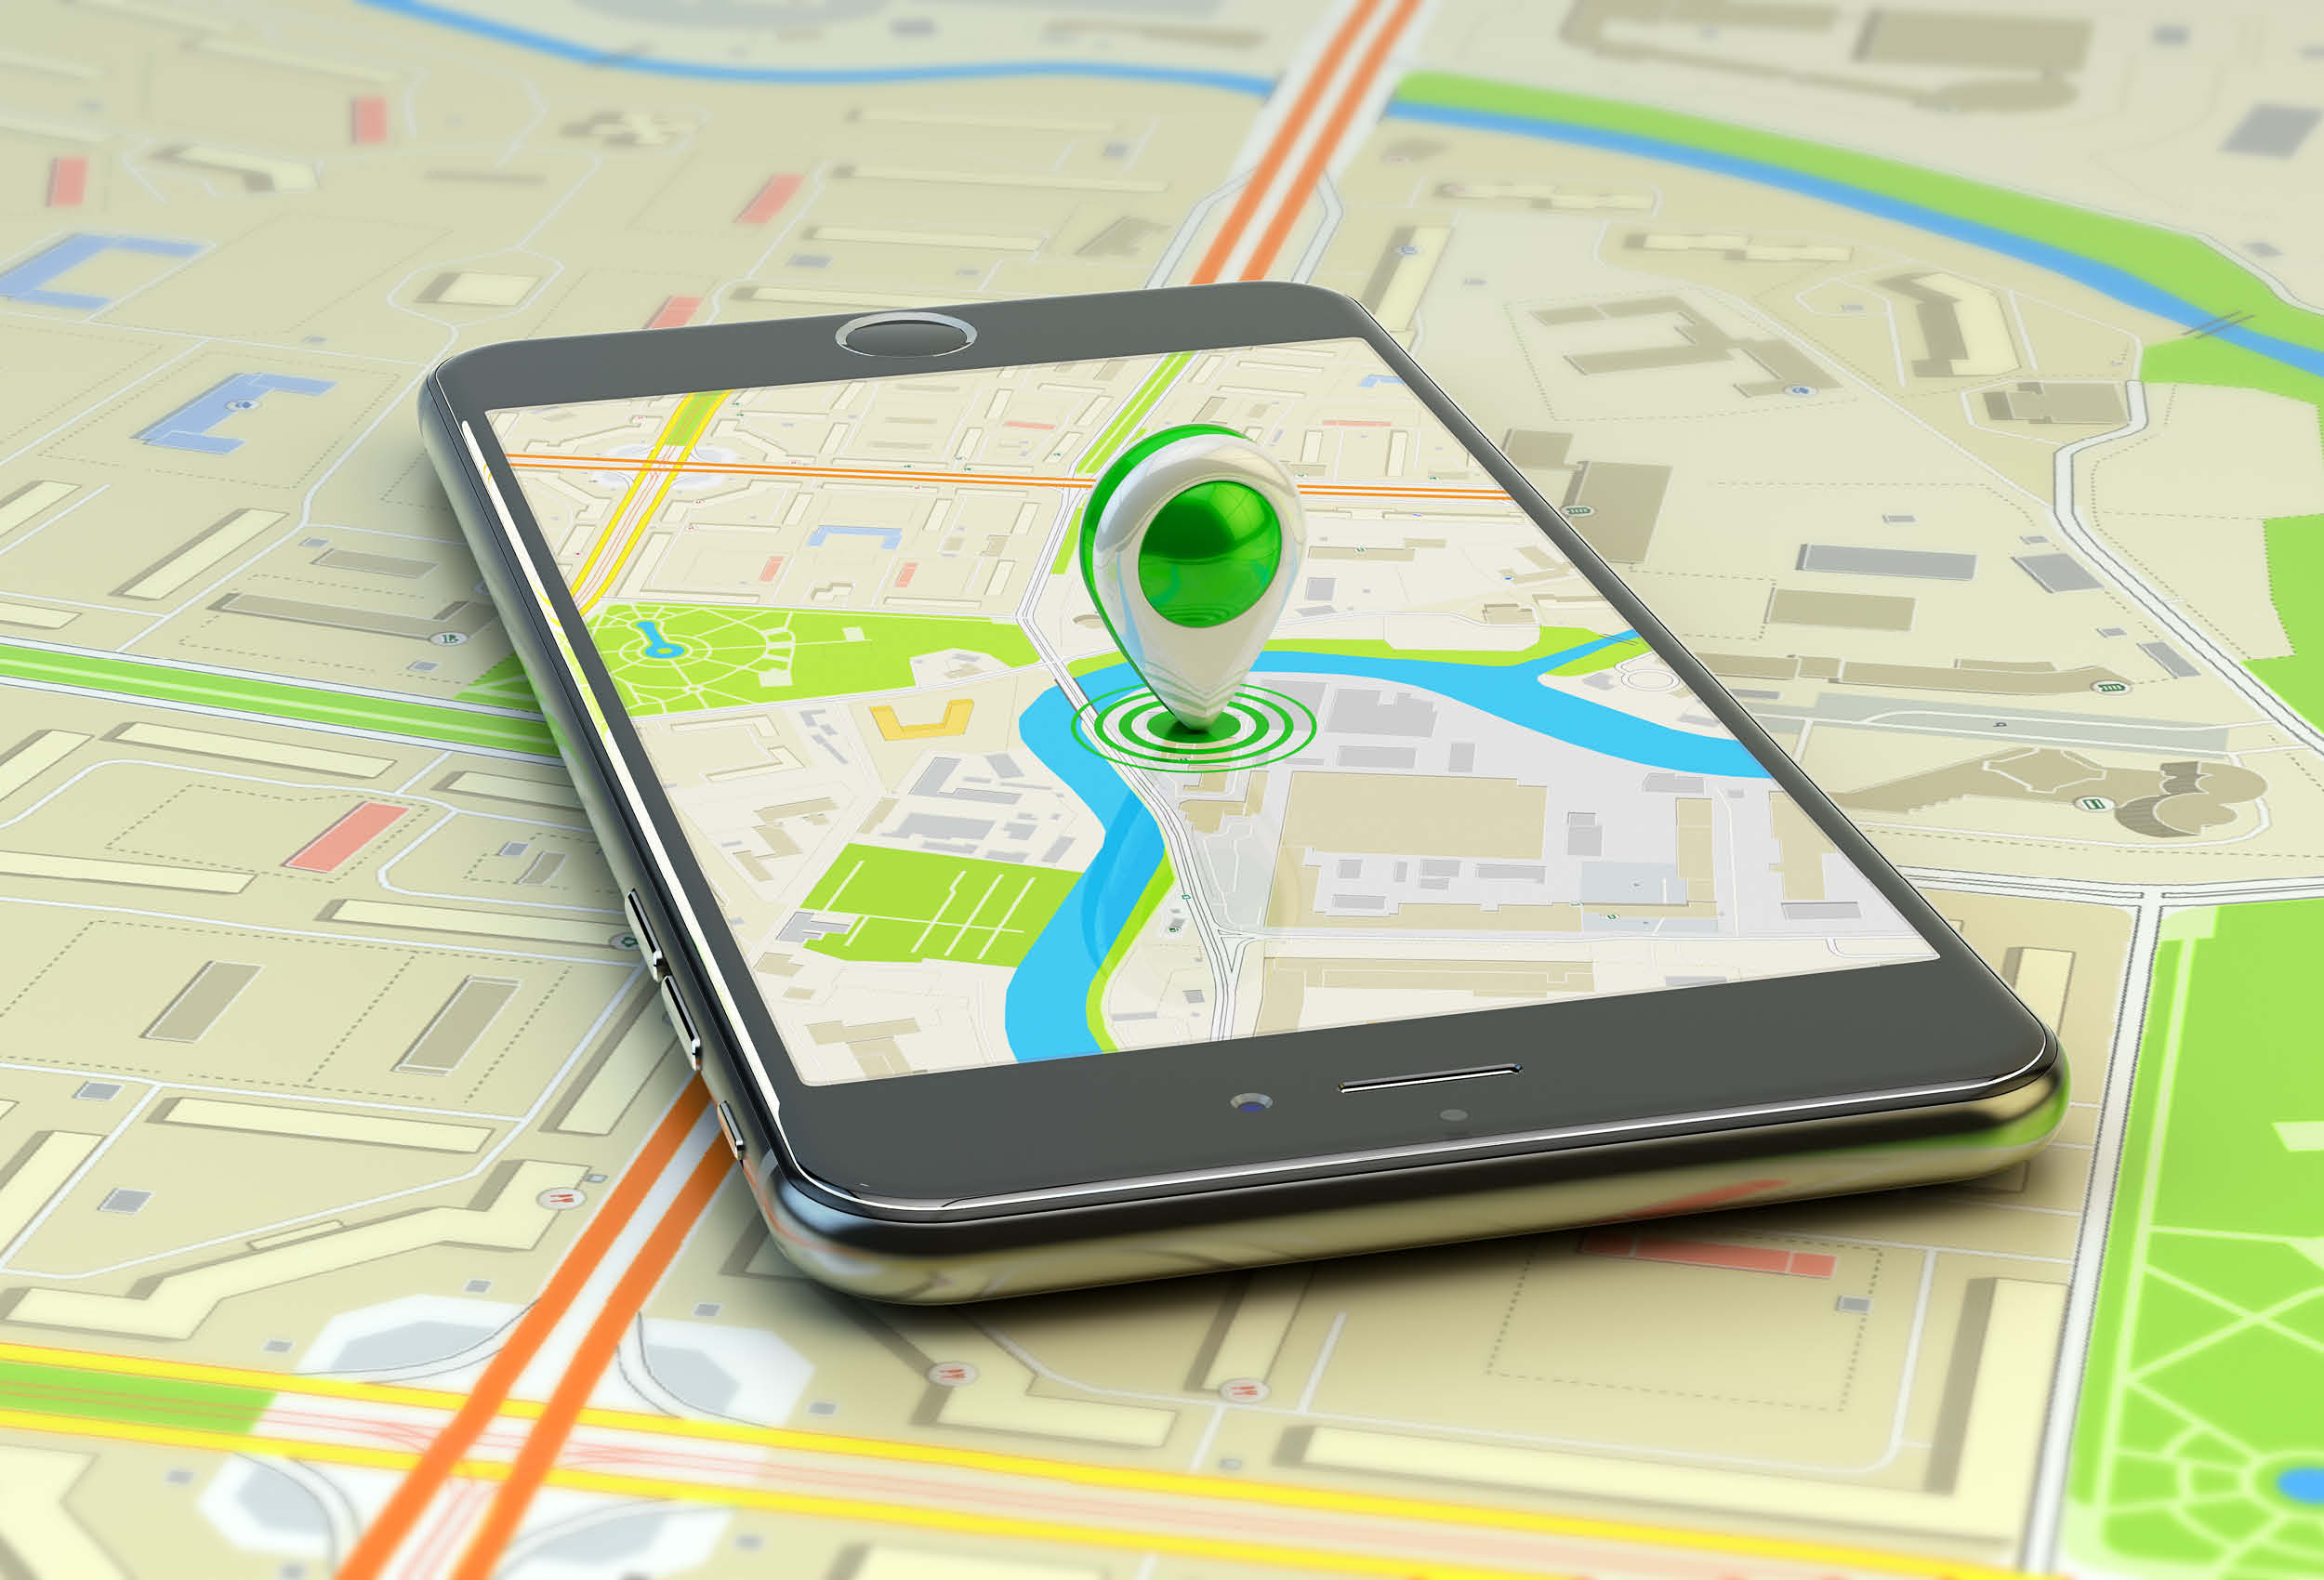 Местоположение планшета. GPS В смартфоне. Навигатор в телефоне. Мобильные ГИС приложения. GPS слежение.